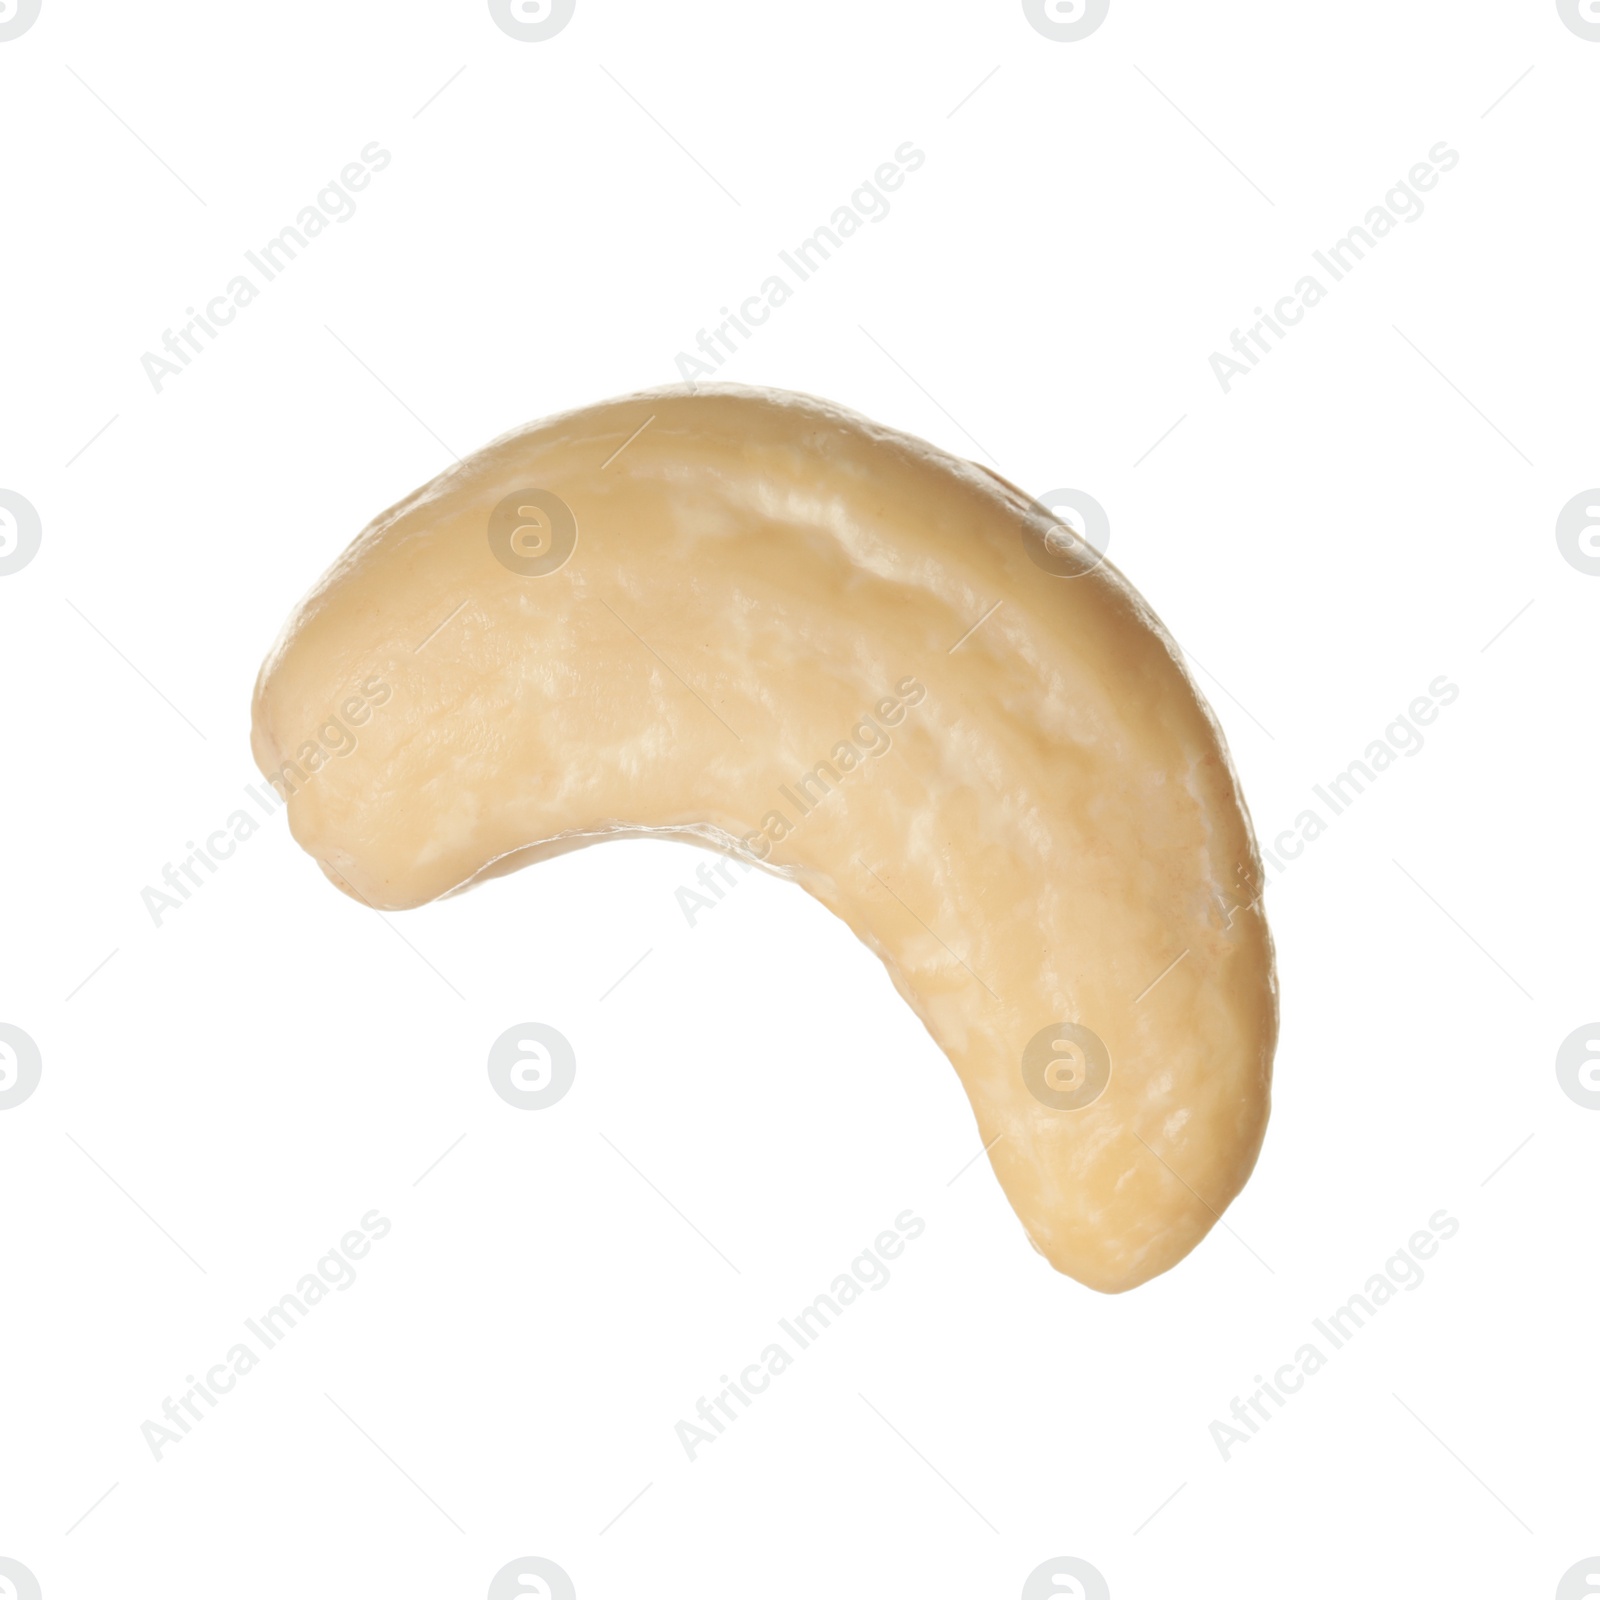 Photo of Tasty organic cashew nut isolated on white